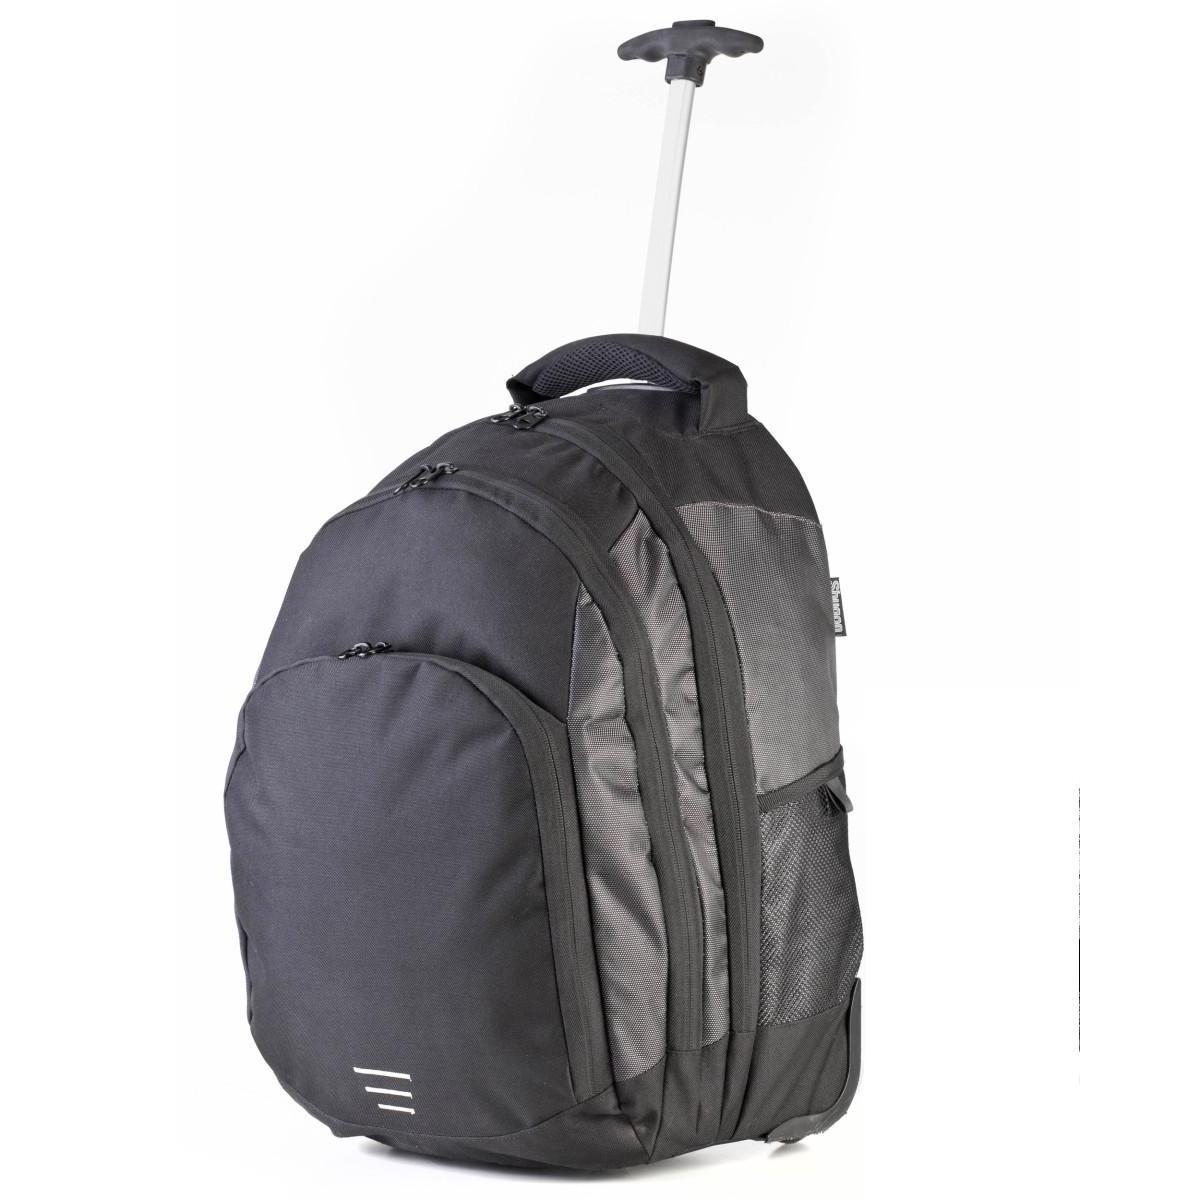 Shugon Carrara II Trolley Backpack (Black/Silver) (One Size)